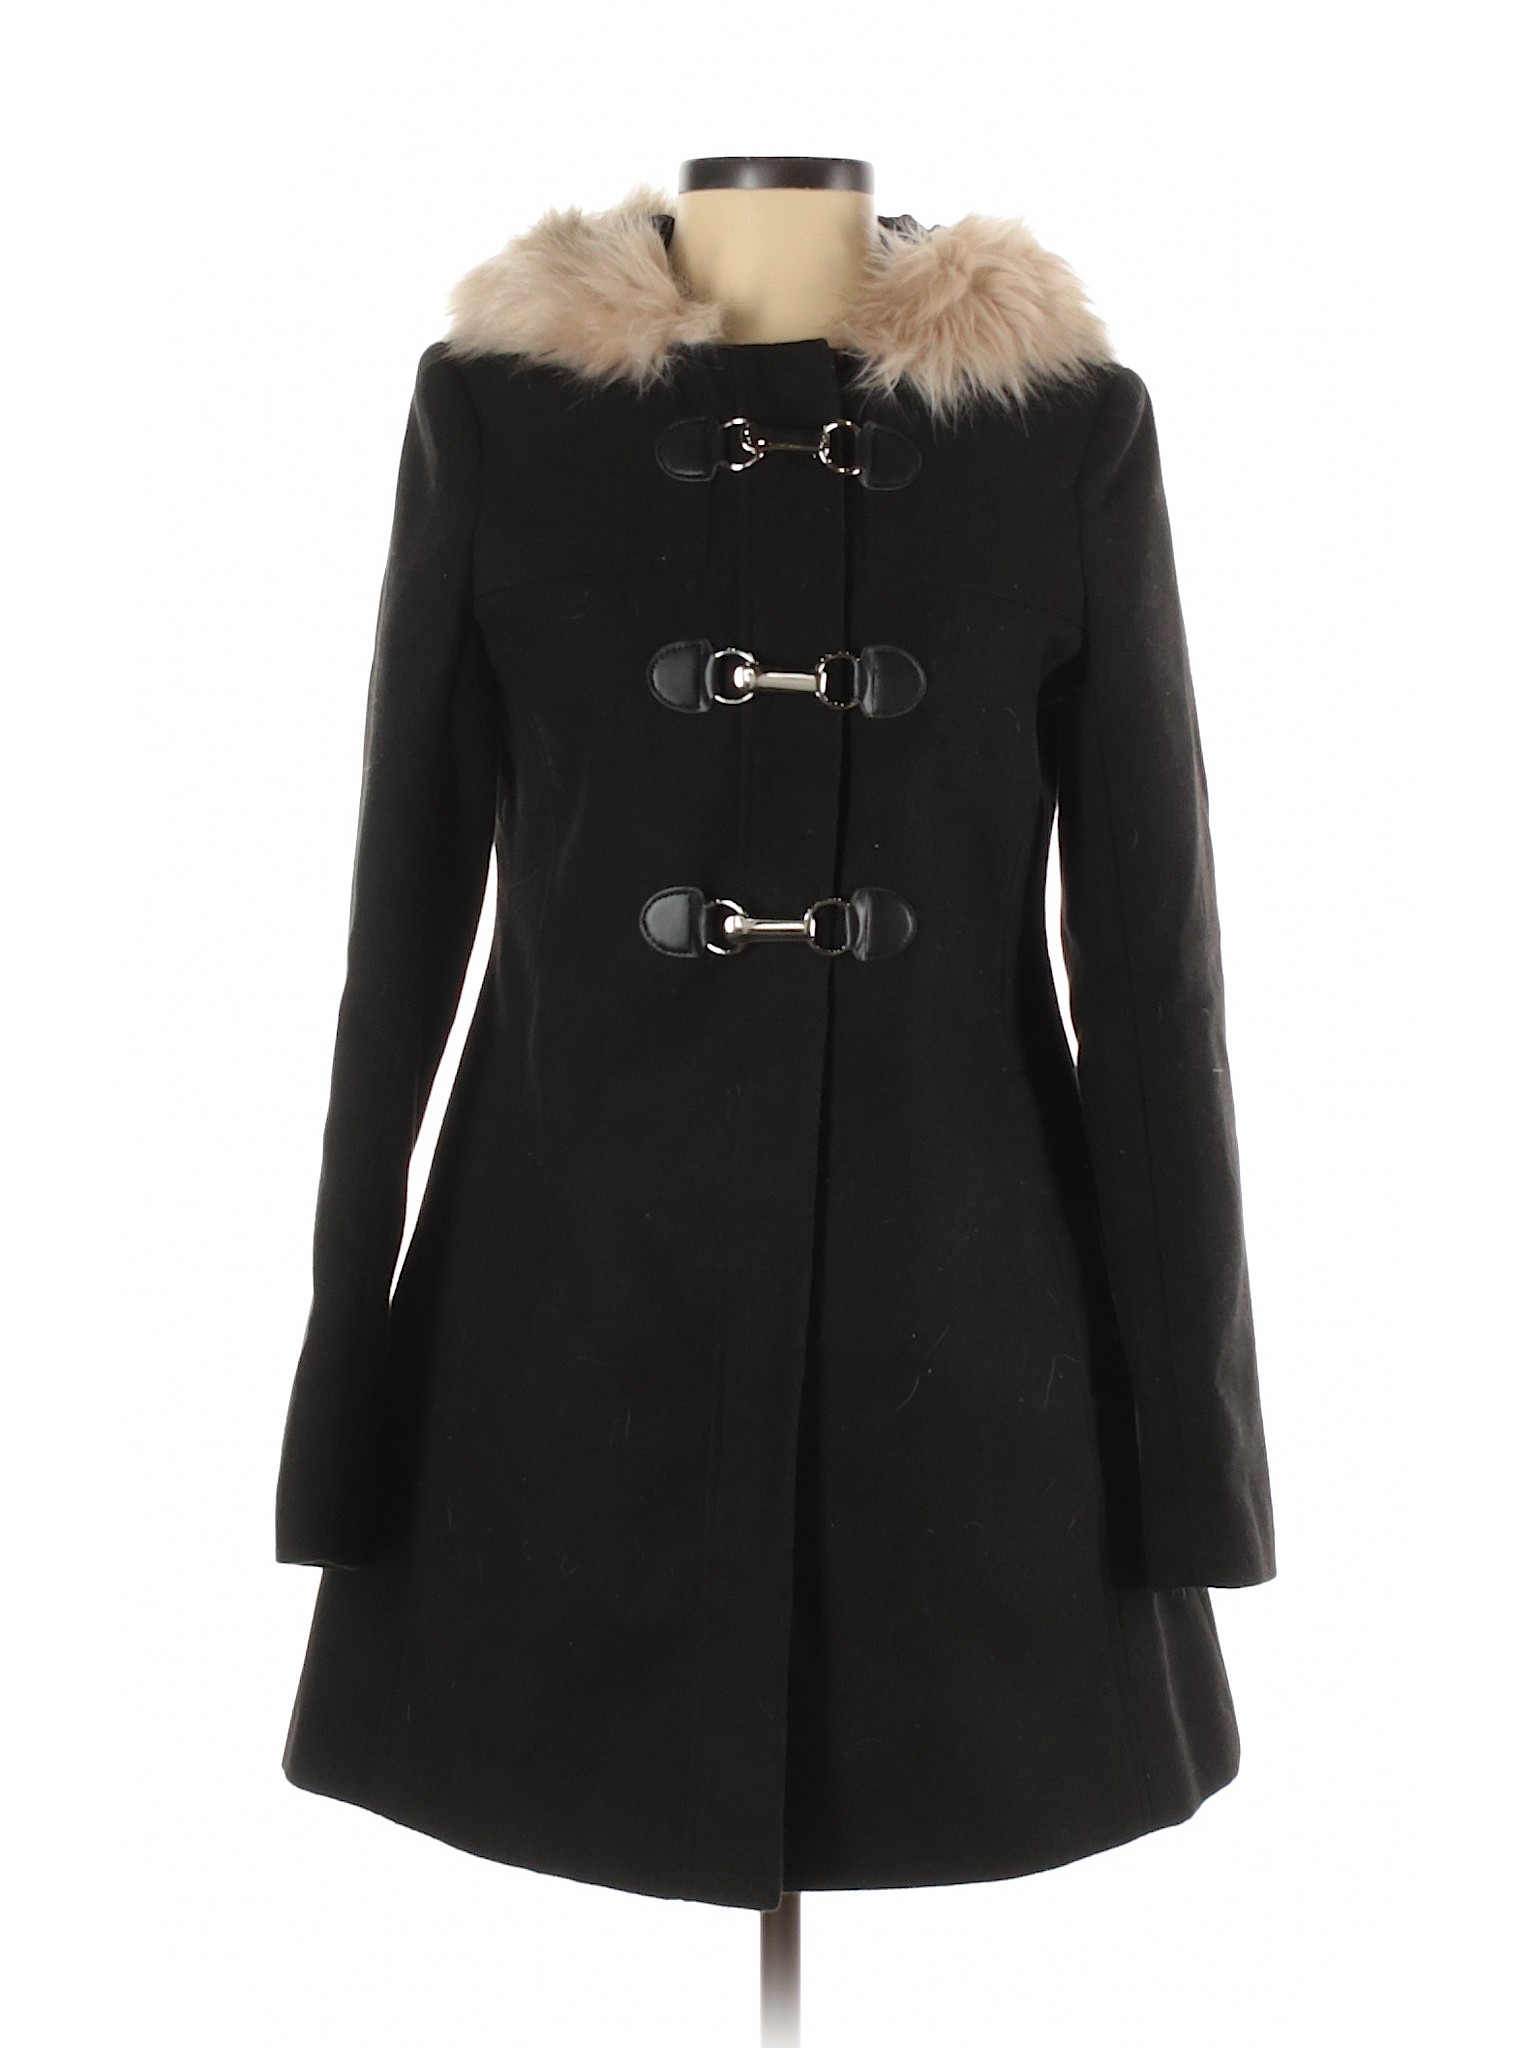 ASOS Women Black Coat 4 | eBay